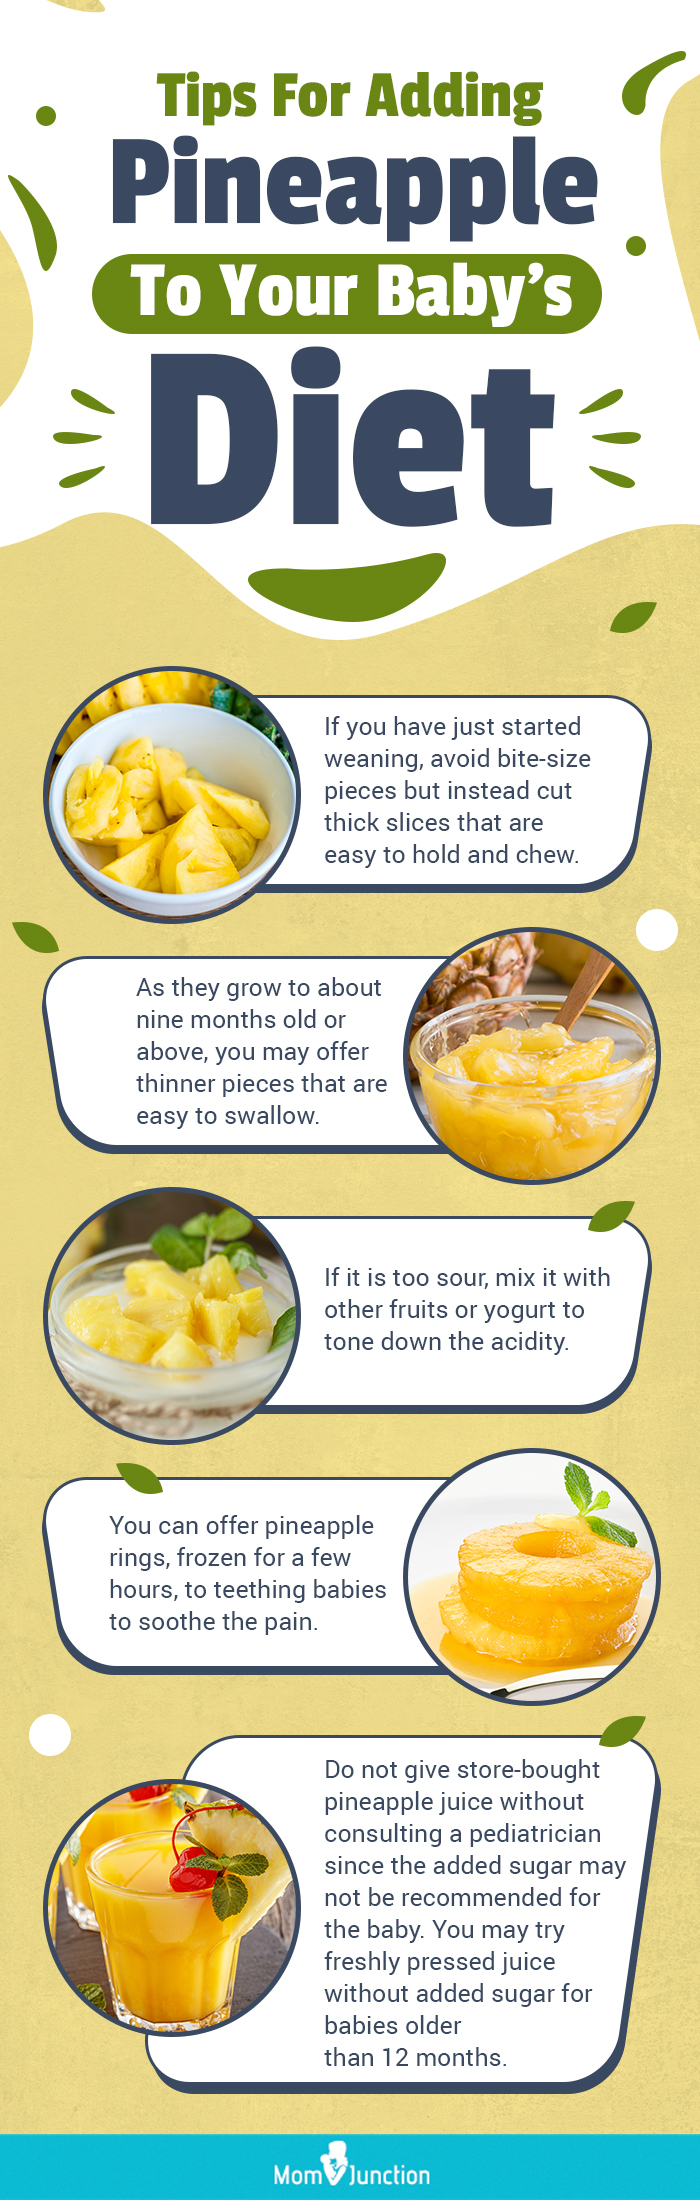 在宝宝的饮食中添加菠萝的建议(信息图)